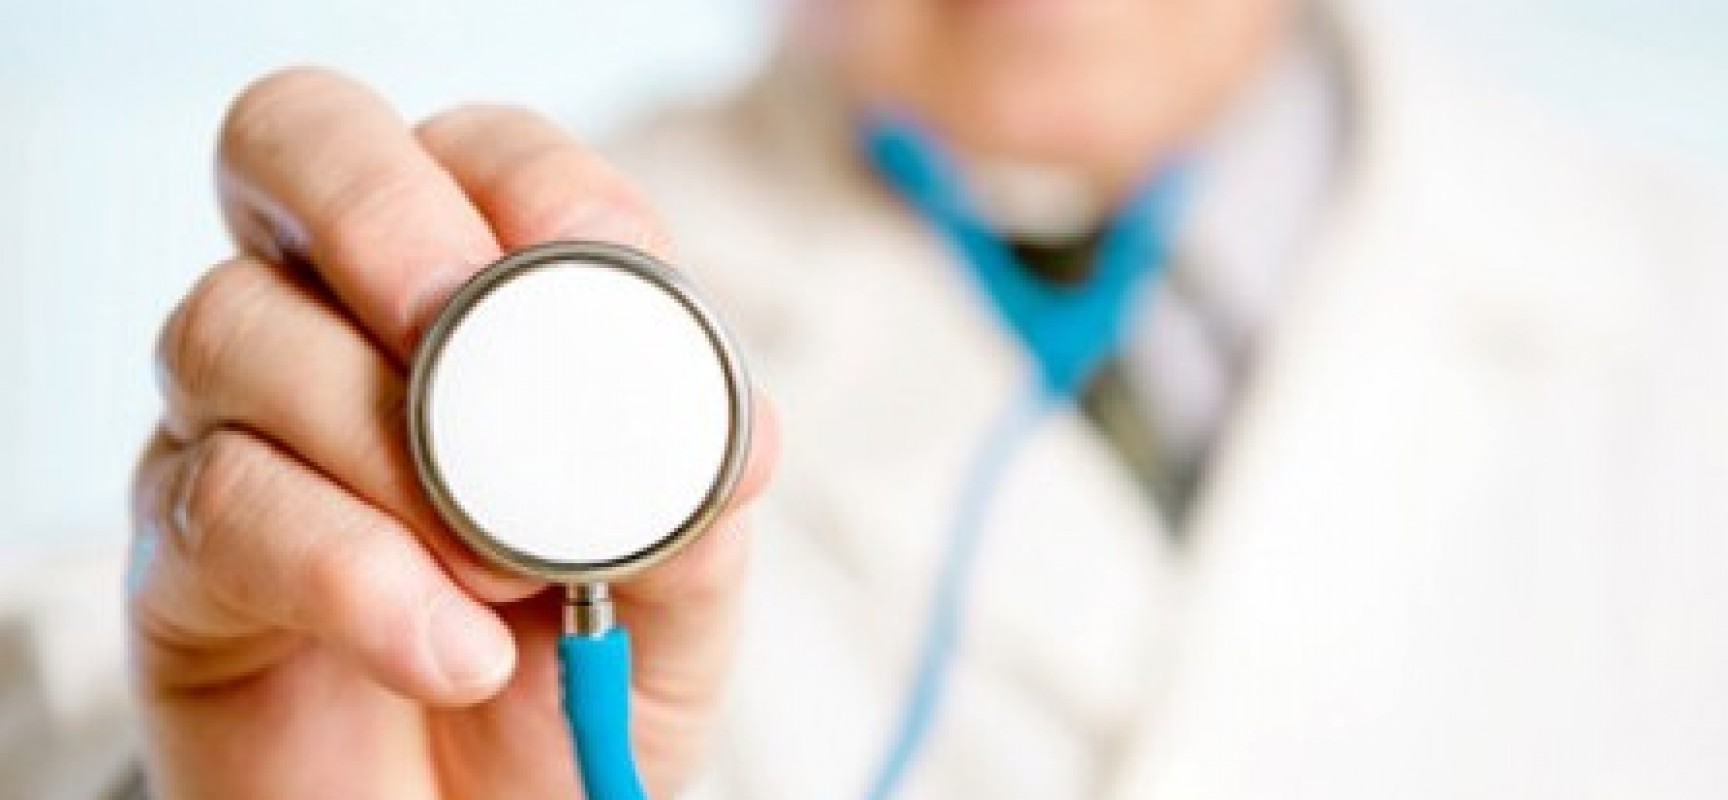 UNA: Nova unidade de saúde vai ampliar atendimento no distrito de Colônia